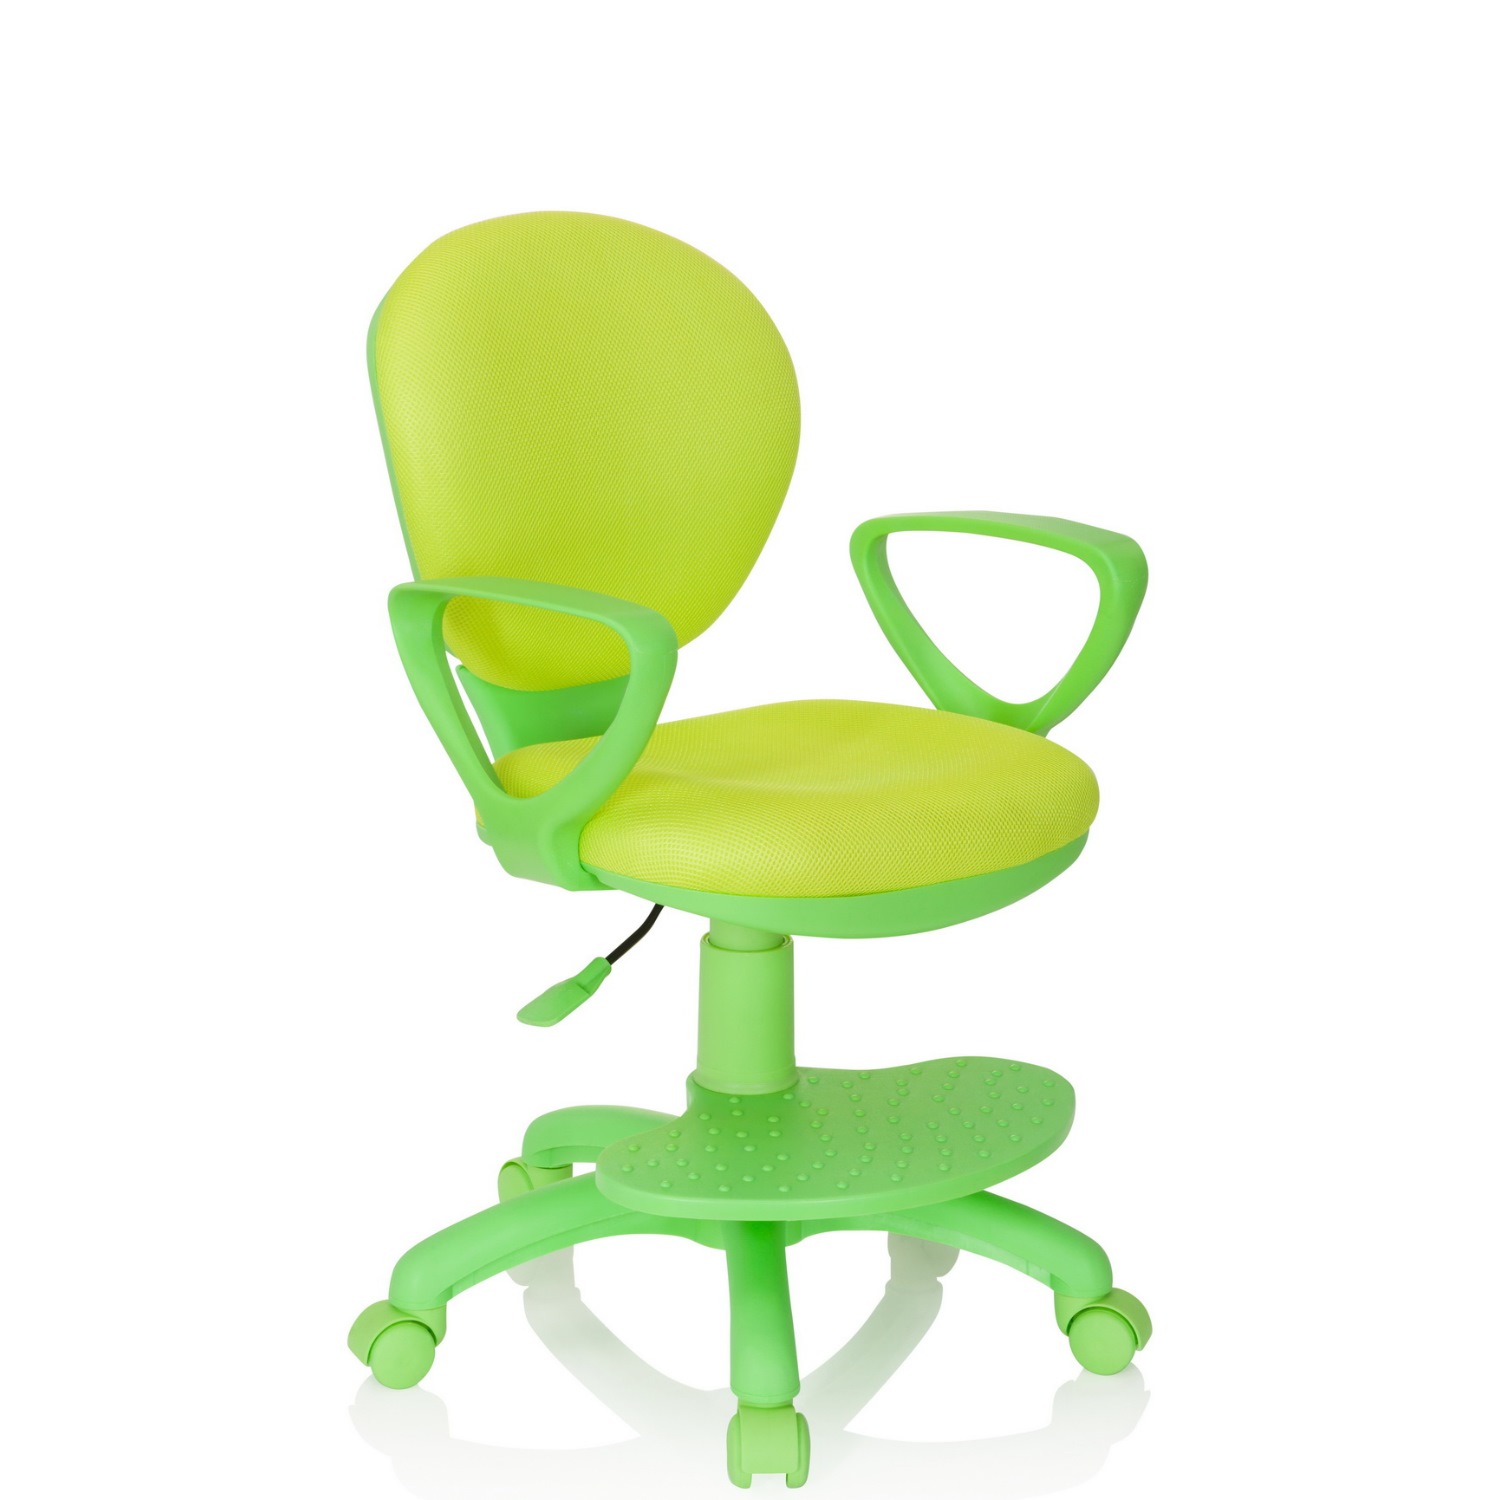 Büroland Kinderstuhl Büromöbel PARADIGM schnell - / grün Schreibtischstuhl und preiswert Stoff